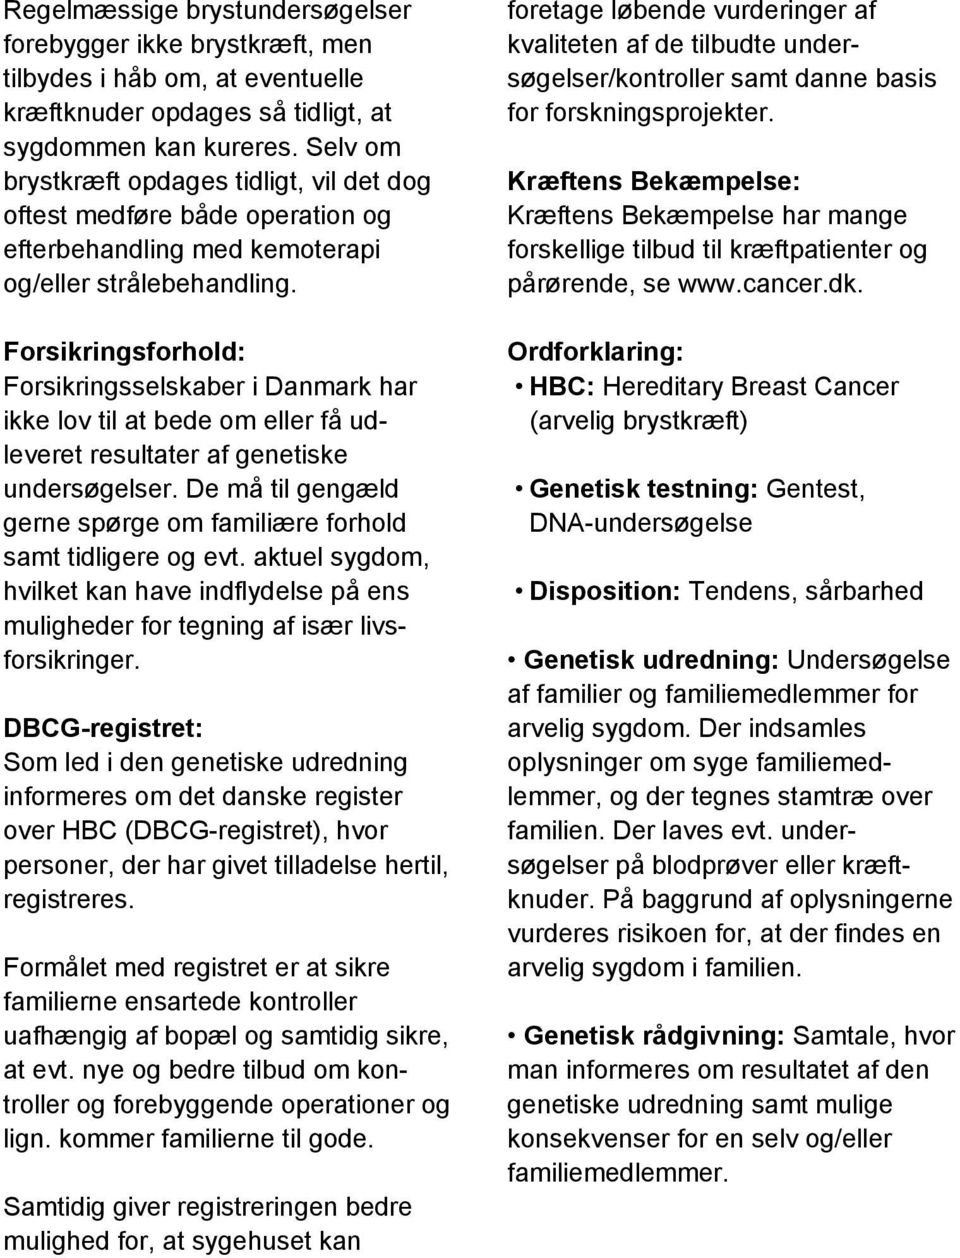 Forsikringsforhold: Forsikringsselskaber i Danmark har ikke lov til at bede om eller få udleveret resultater af genetiske undersøgelser.